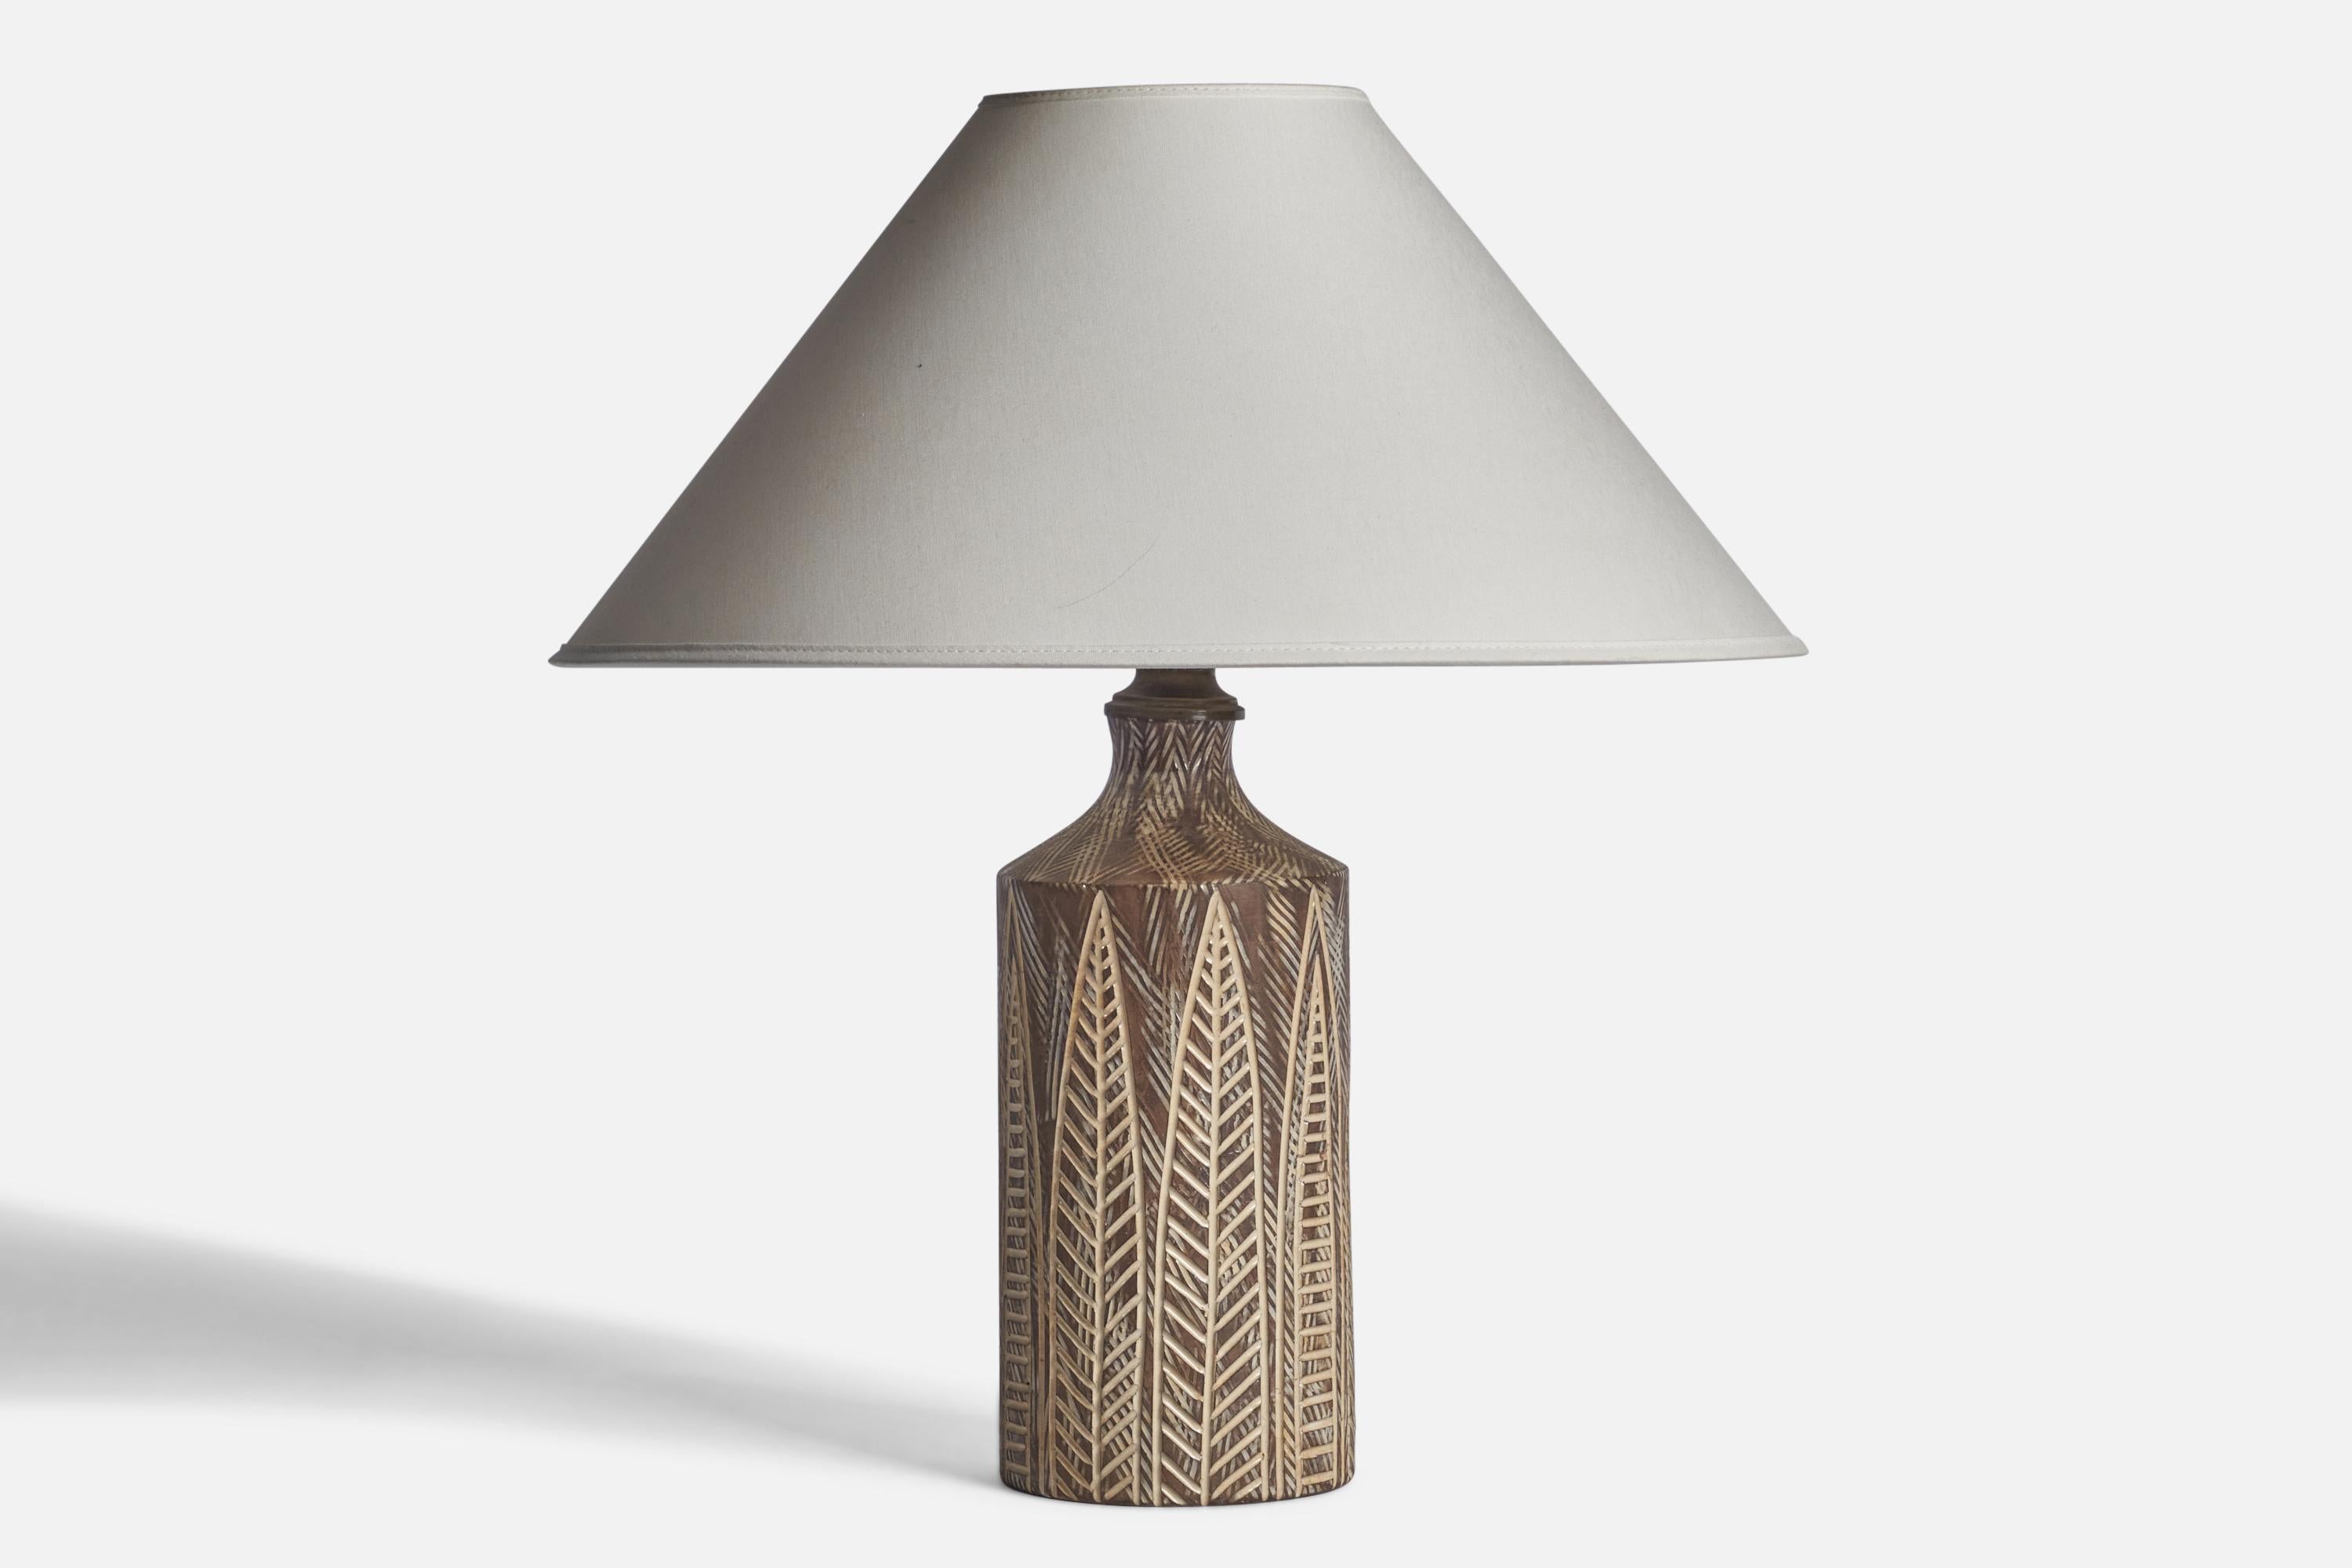 Lampe de table incisée à l'émail gris, conçue par Mari Simmulson et produite par Upsala Ekeby, Suède, années 1950.

Dimensions de la lampe (pouces) : 12.75